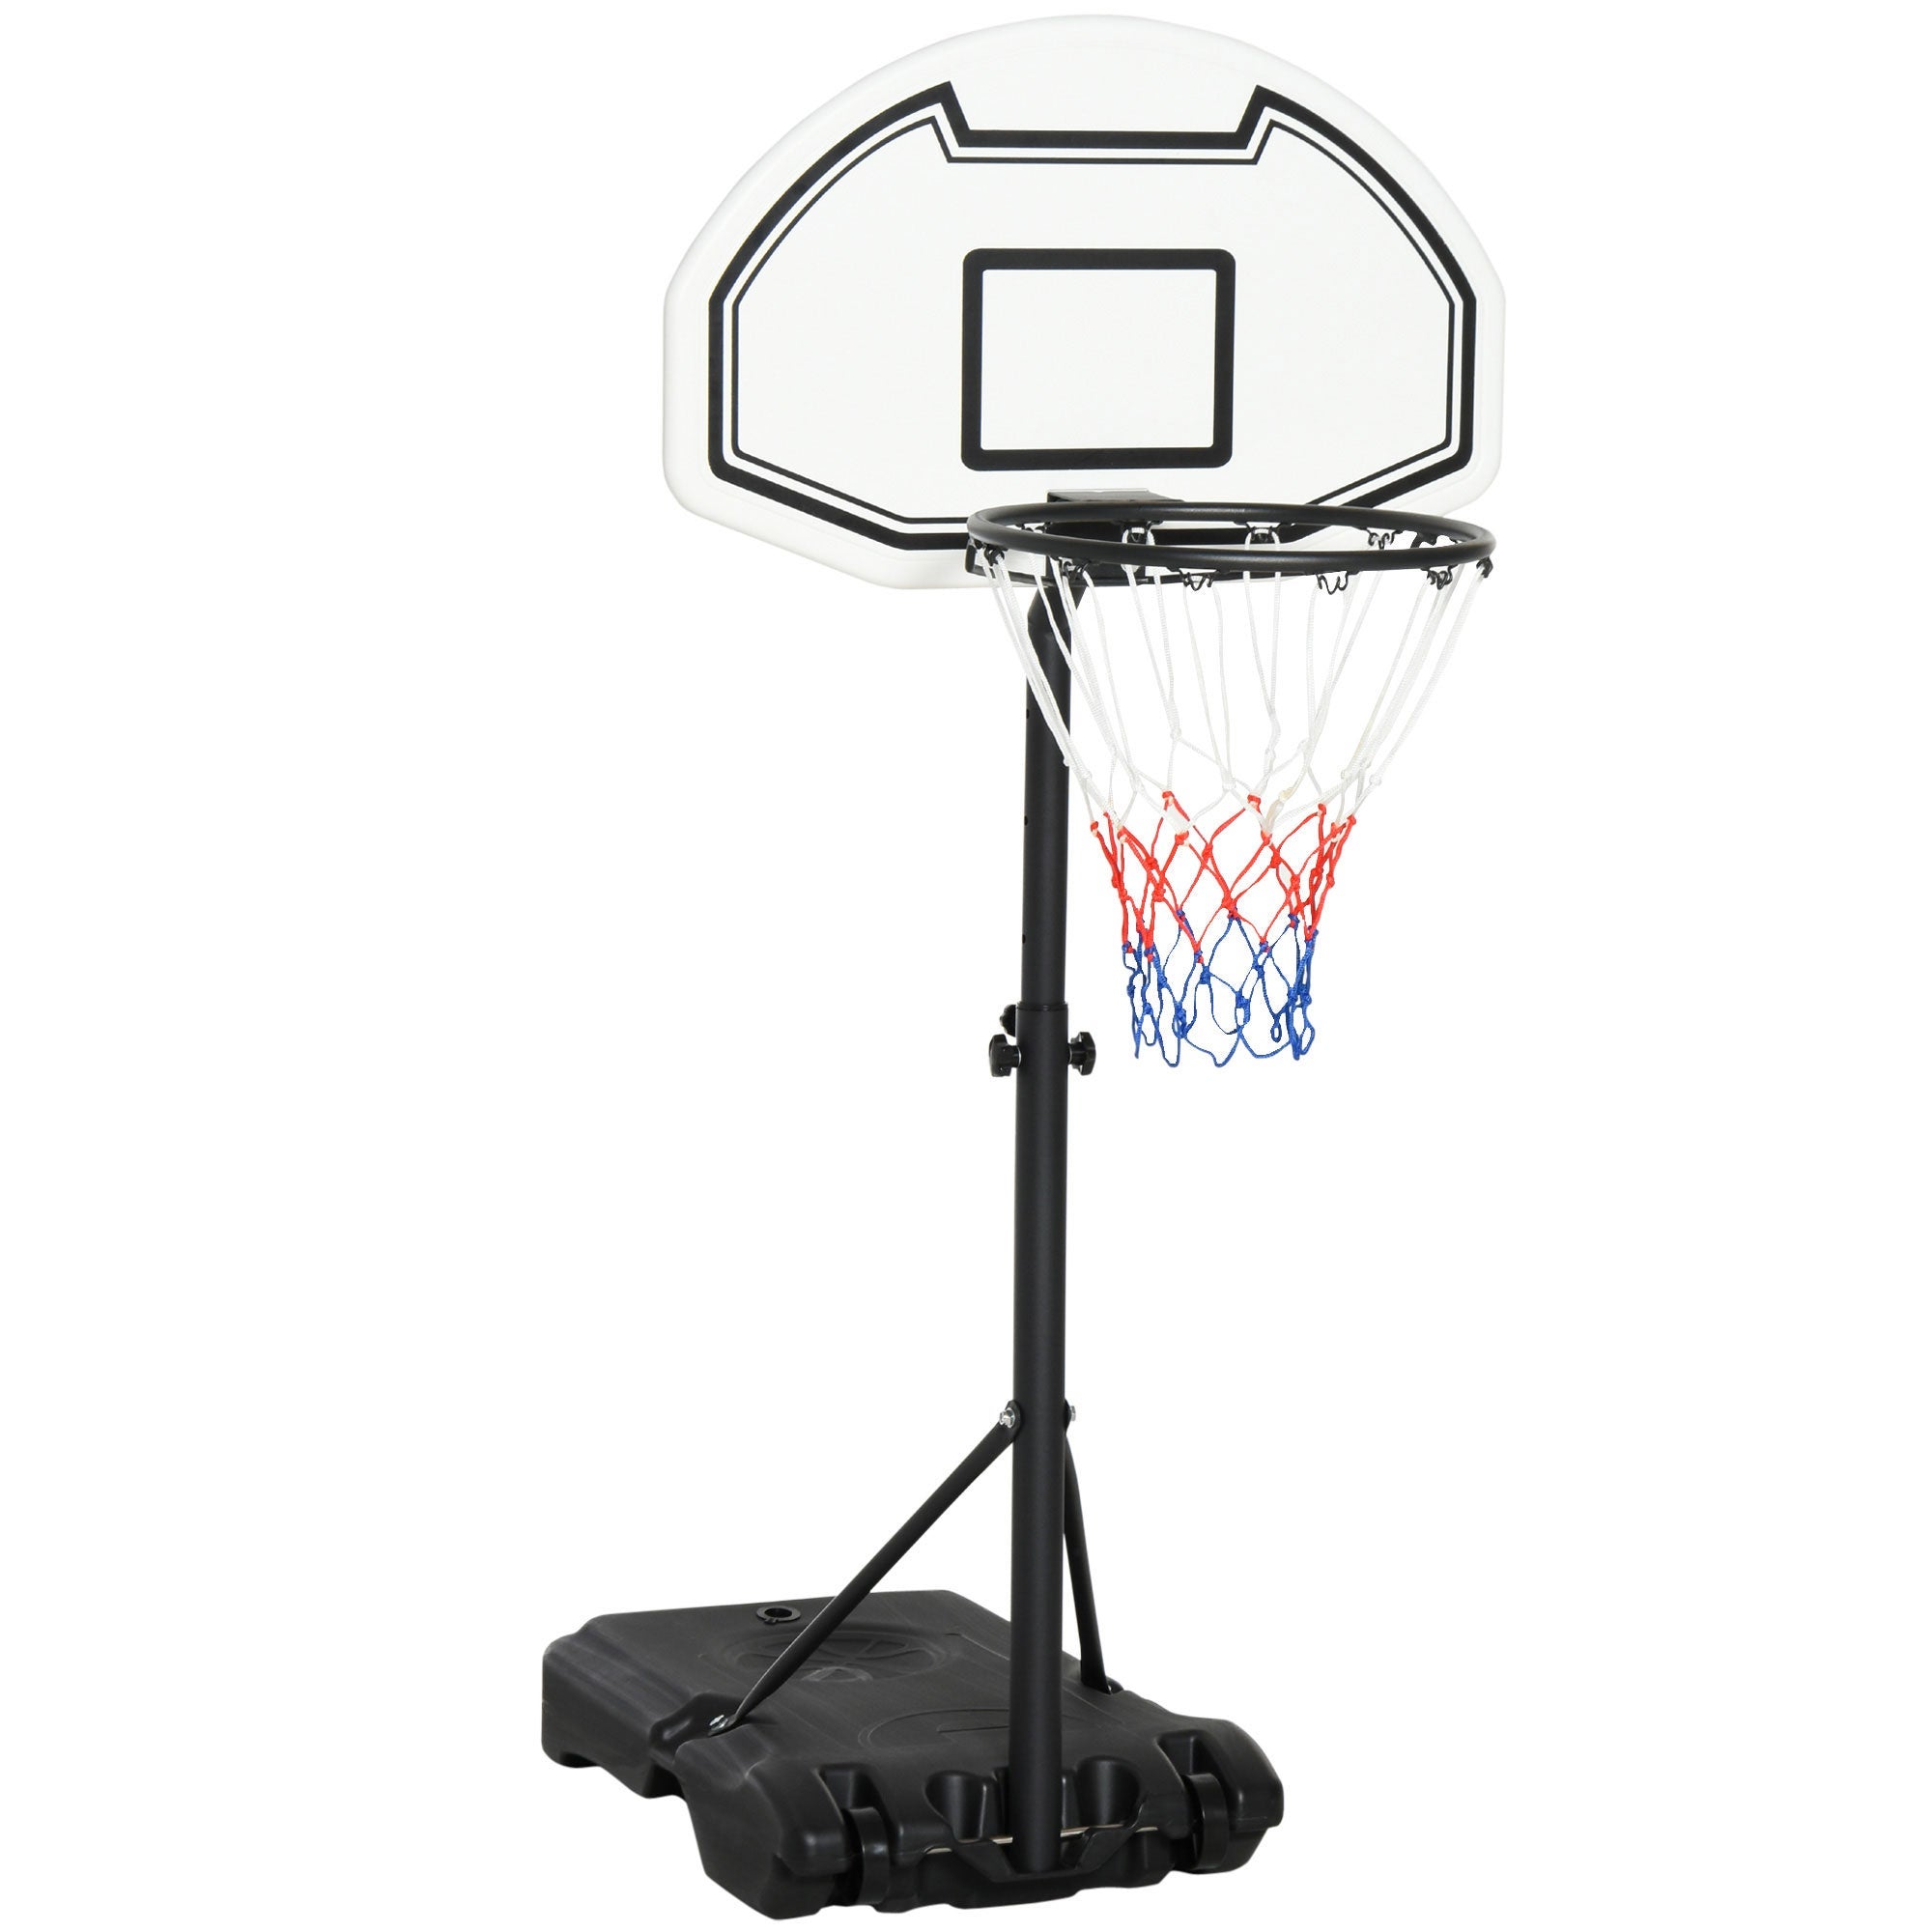 COSTWAY Canestro da Basket per Bambini Portatile e Regolabile in Altezza  90-210cm, Canestro Basket da